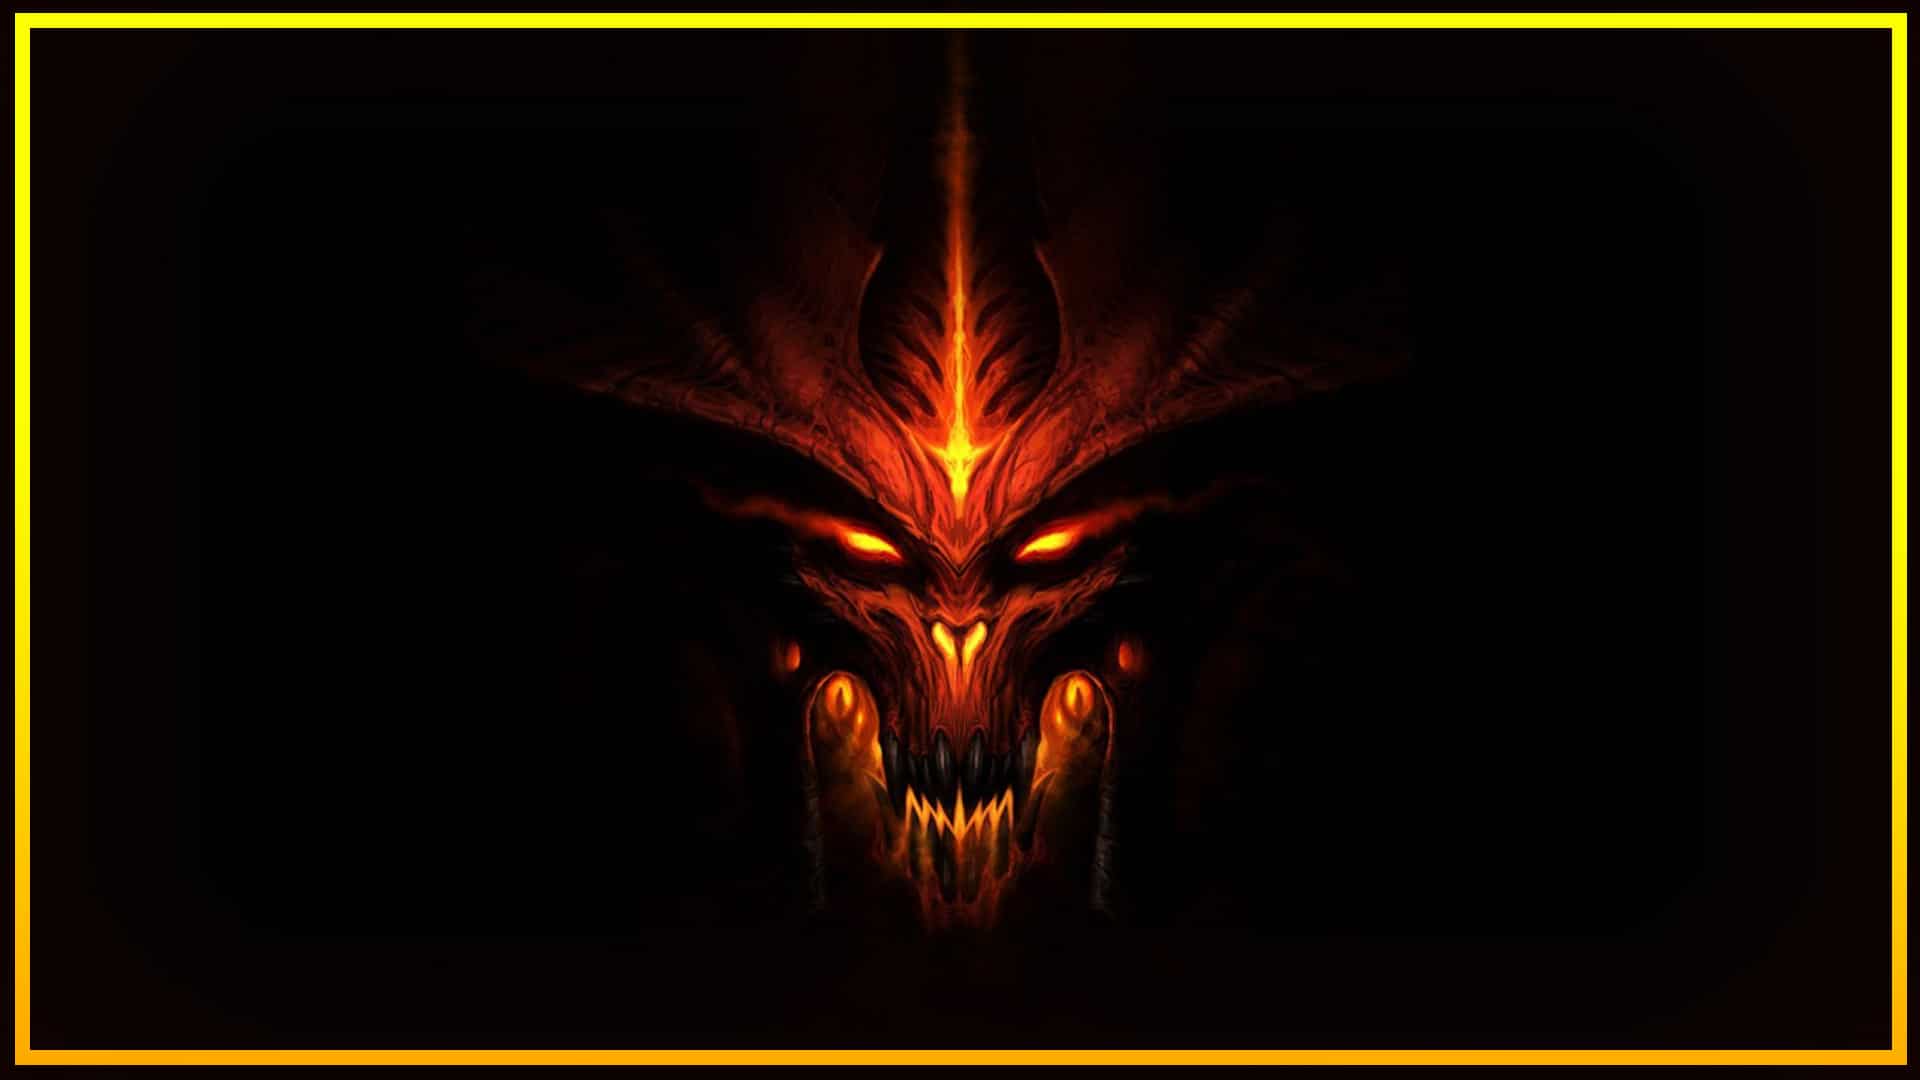 Â¡MÃ¡s imÃ¡genes NUEVAS confirman Diablo IV! #NGBlizzCon